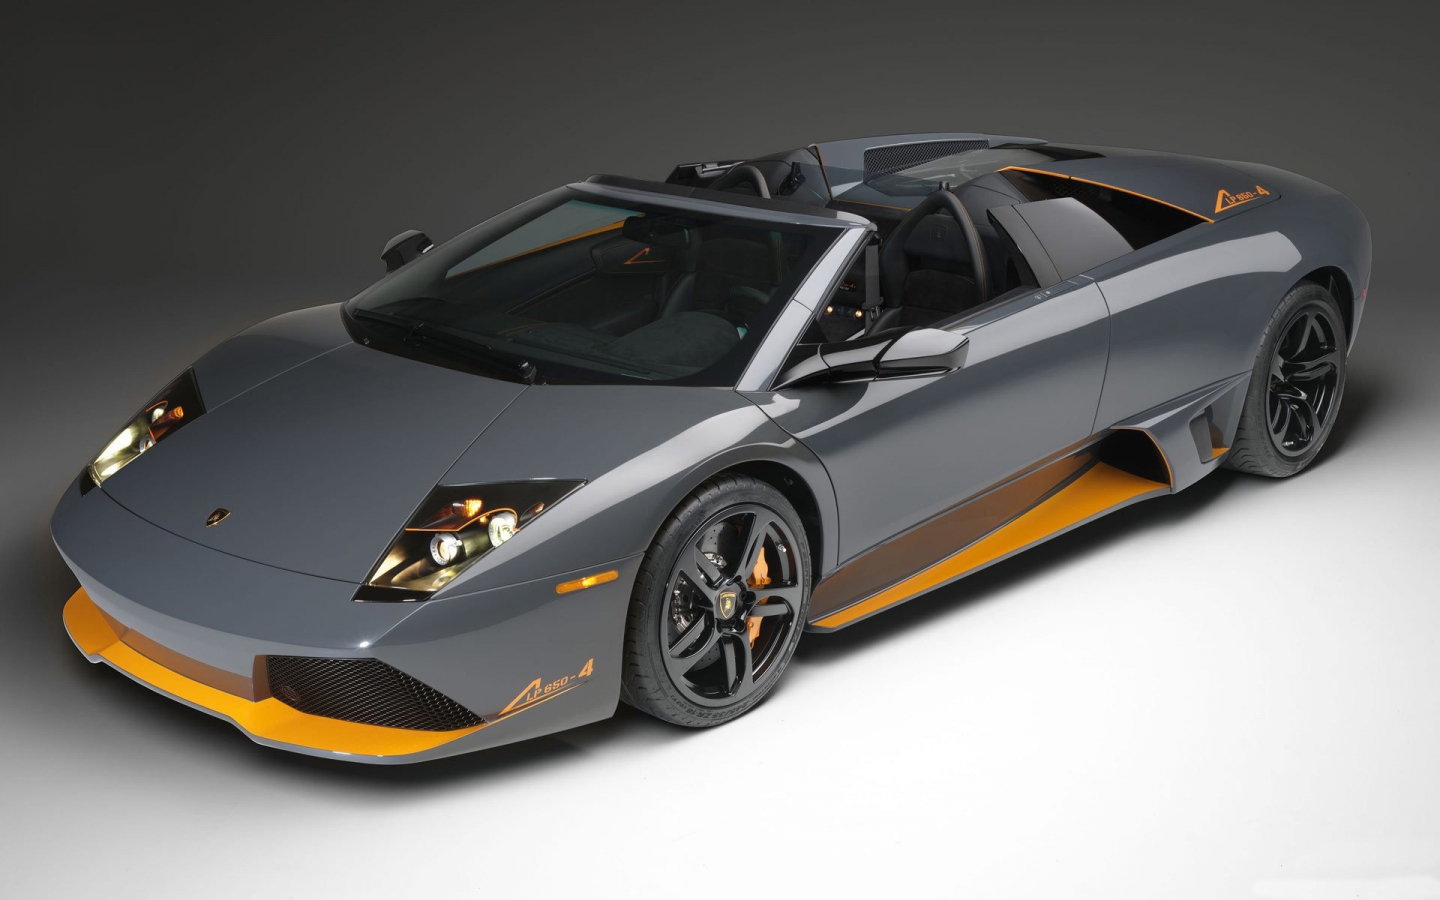 Lamborghini lp 650 Front Angle for 1440 x 900 widescreen resolution